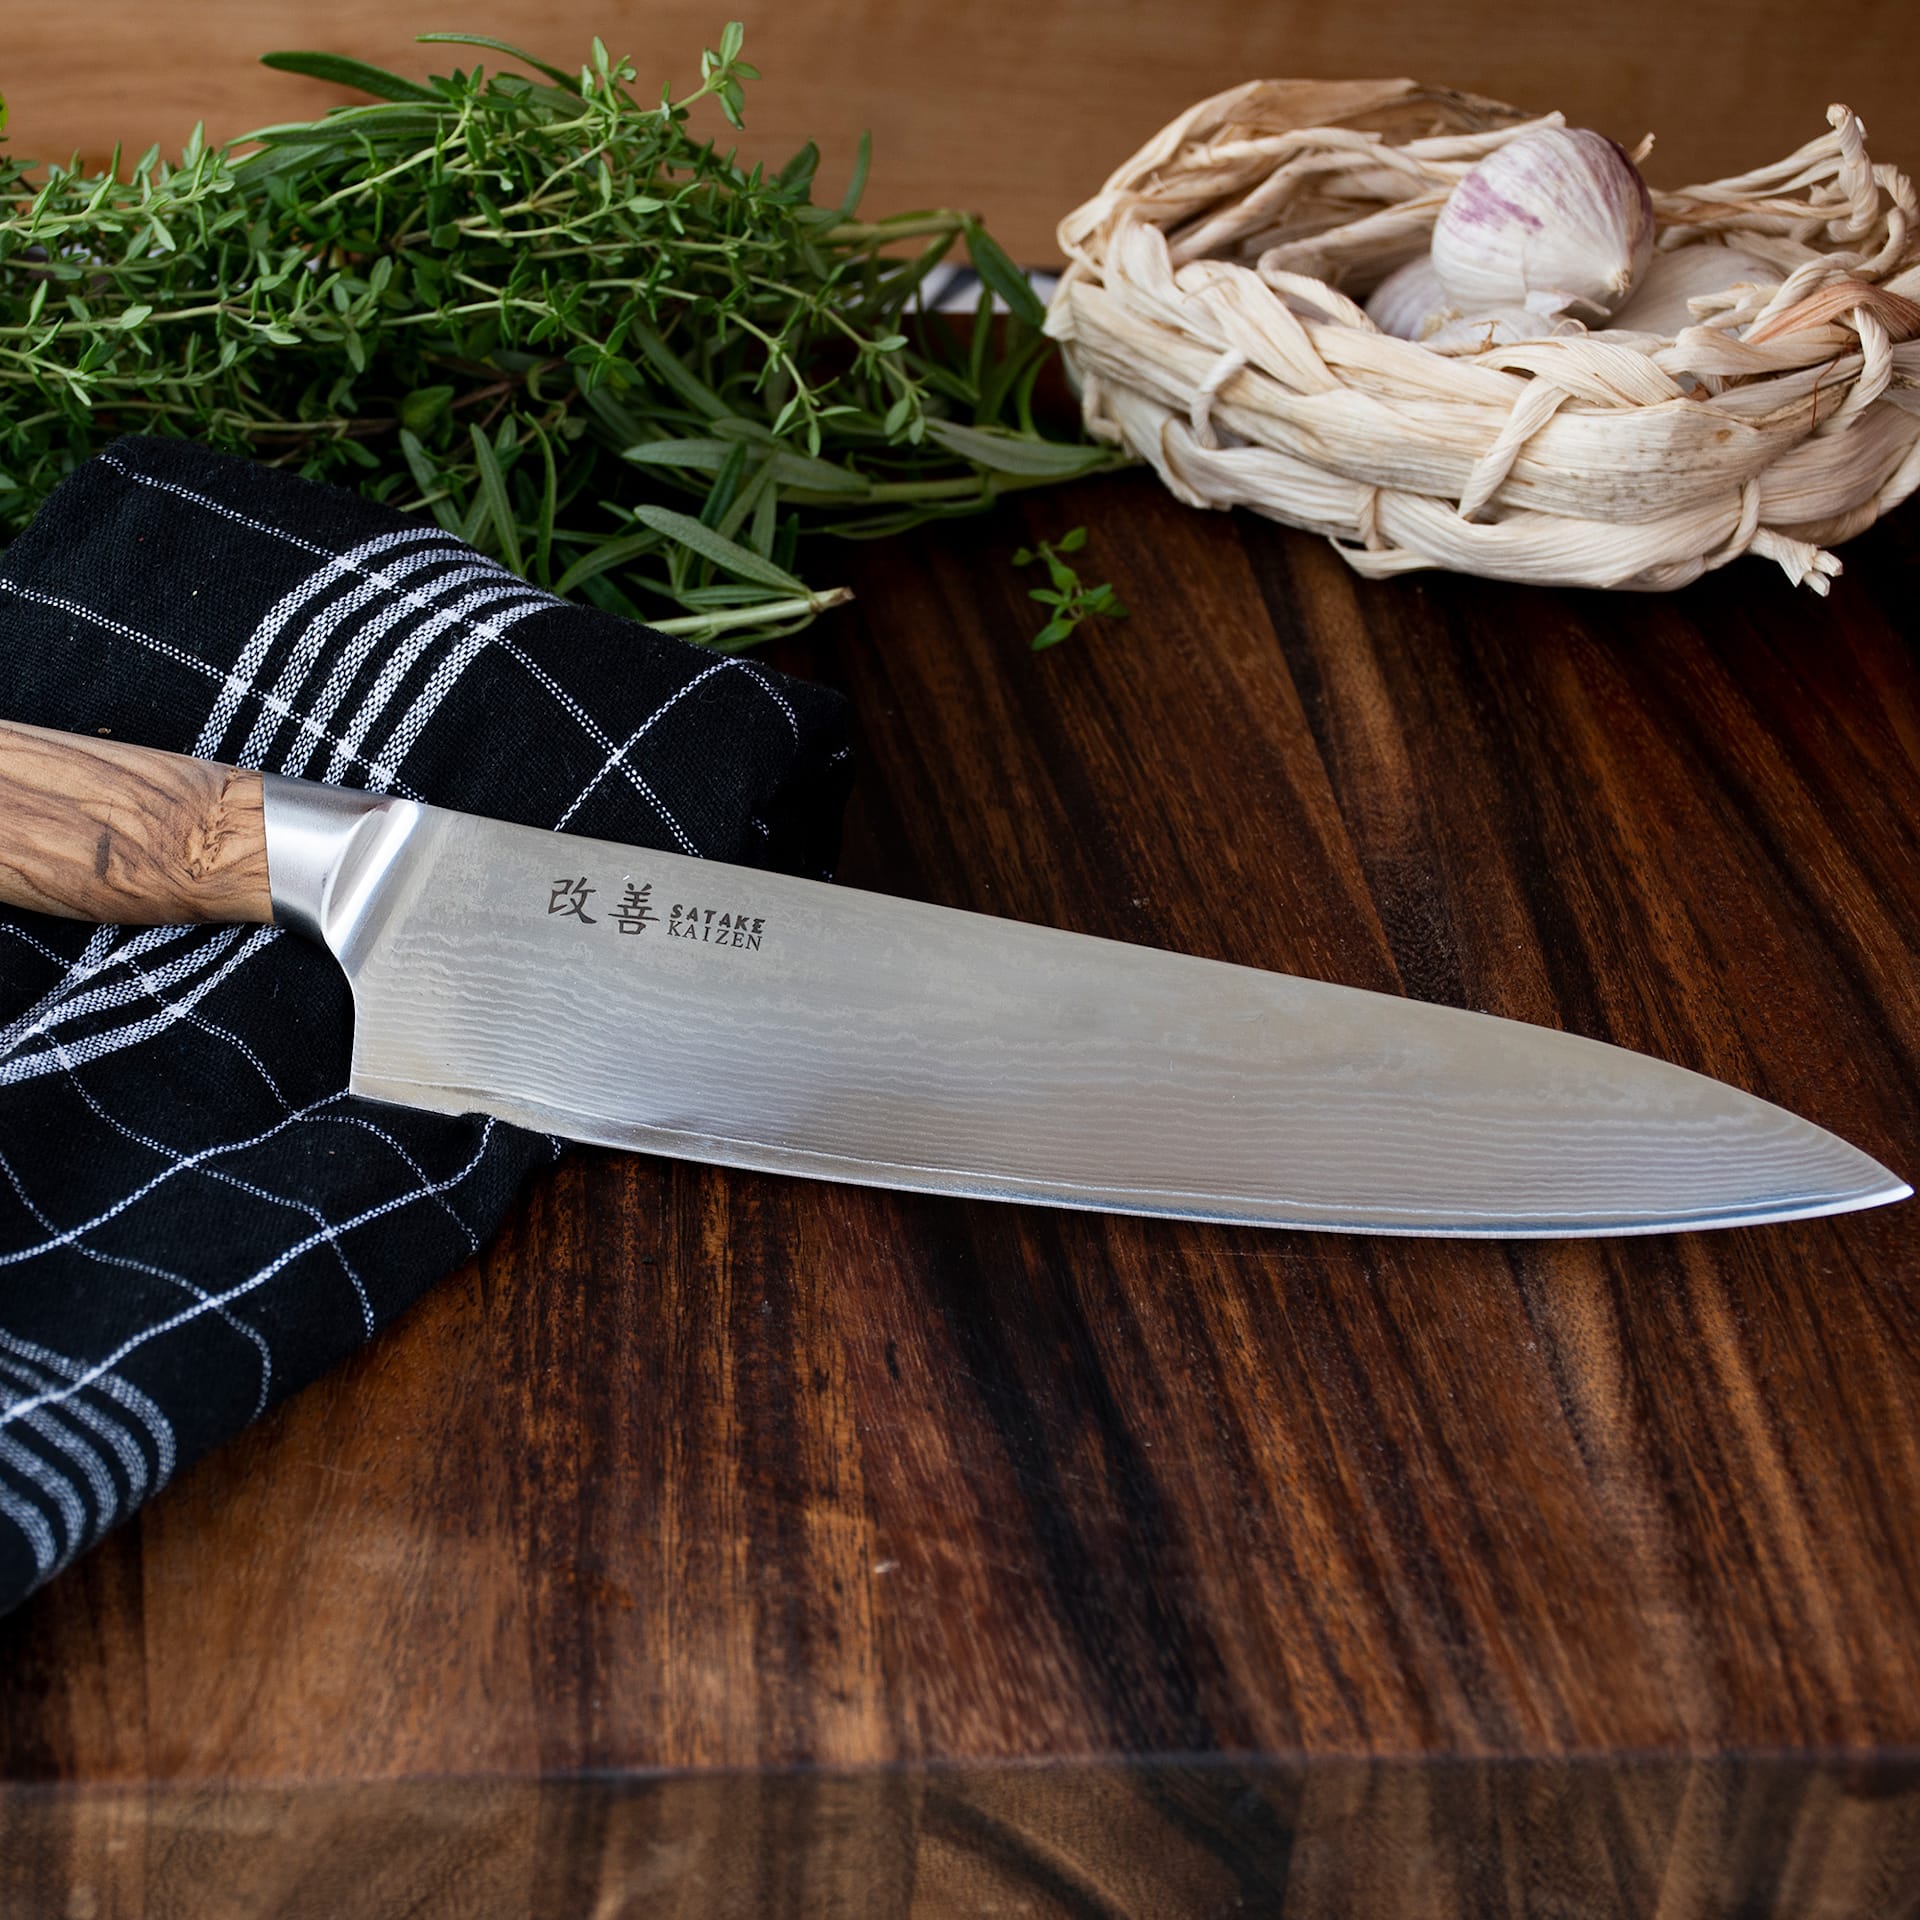 Satake Kaizen - Gyuto, Chef's knife 21 cm - Satake - NO GA